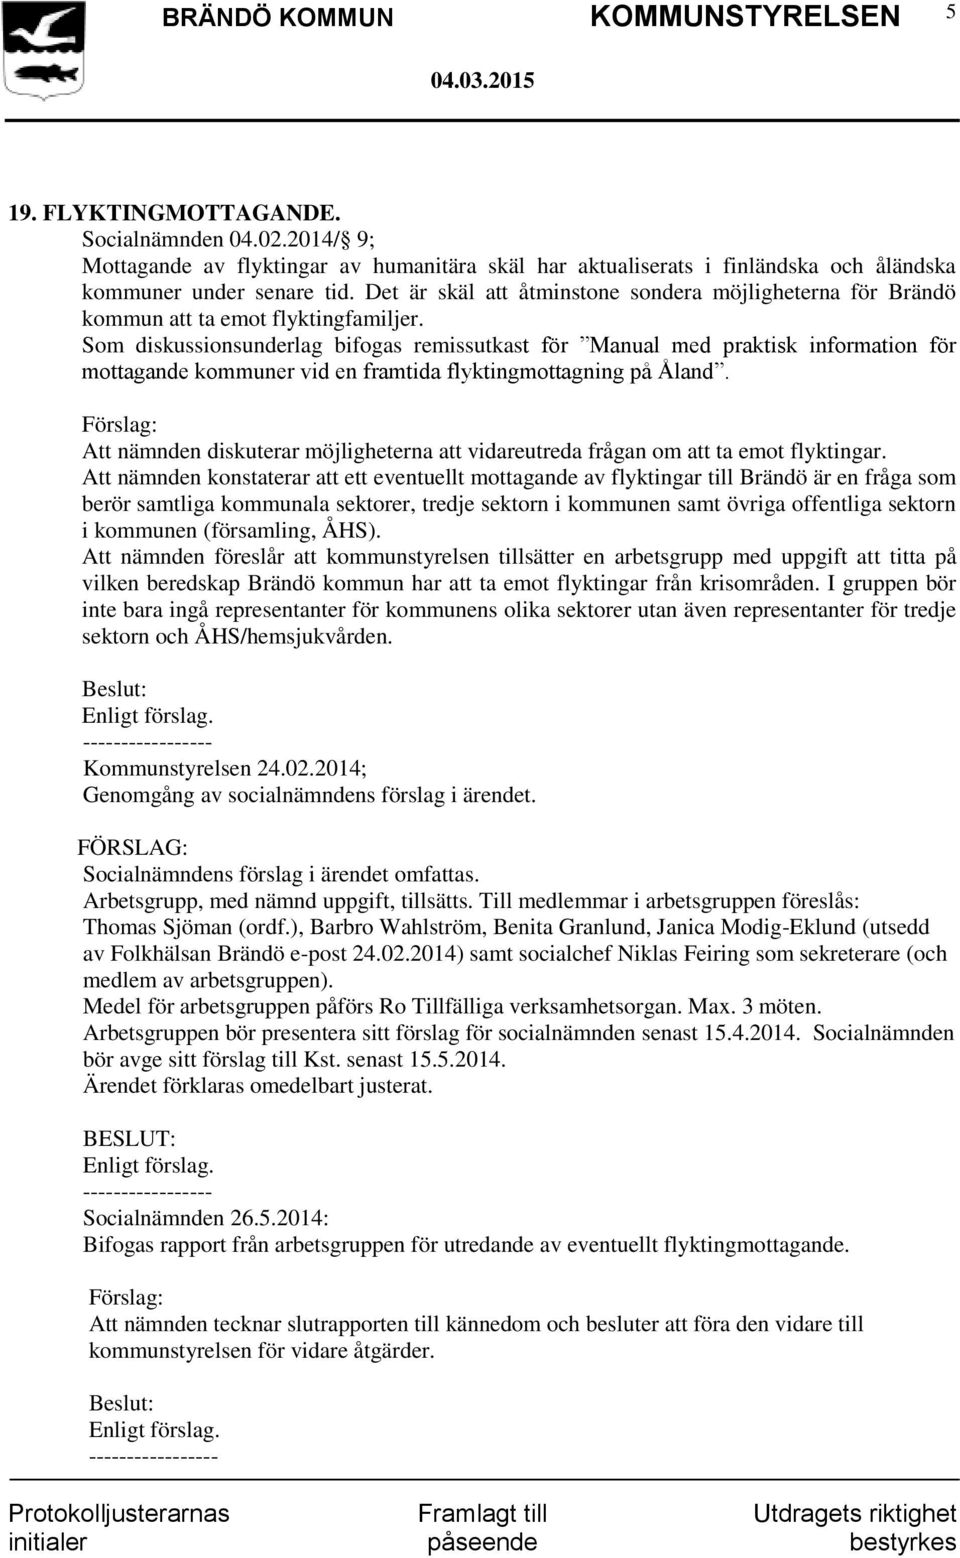 Som diskussionsunderlag bifogas remissutkast för Manual med praktisk information för mottagande kommuner vid en framtida flyktingmottagning på Åland.